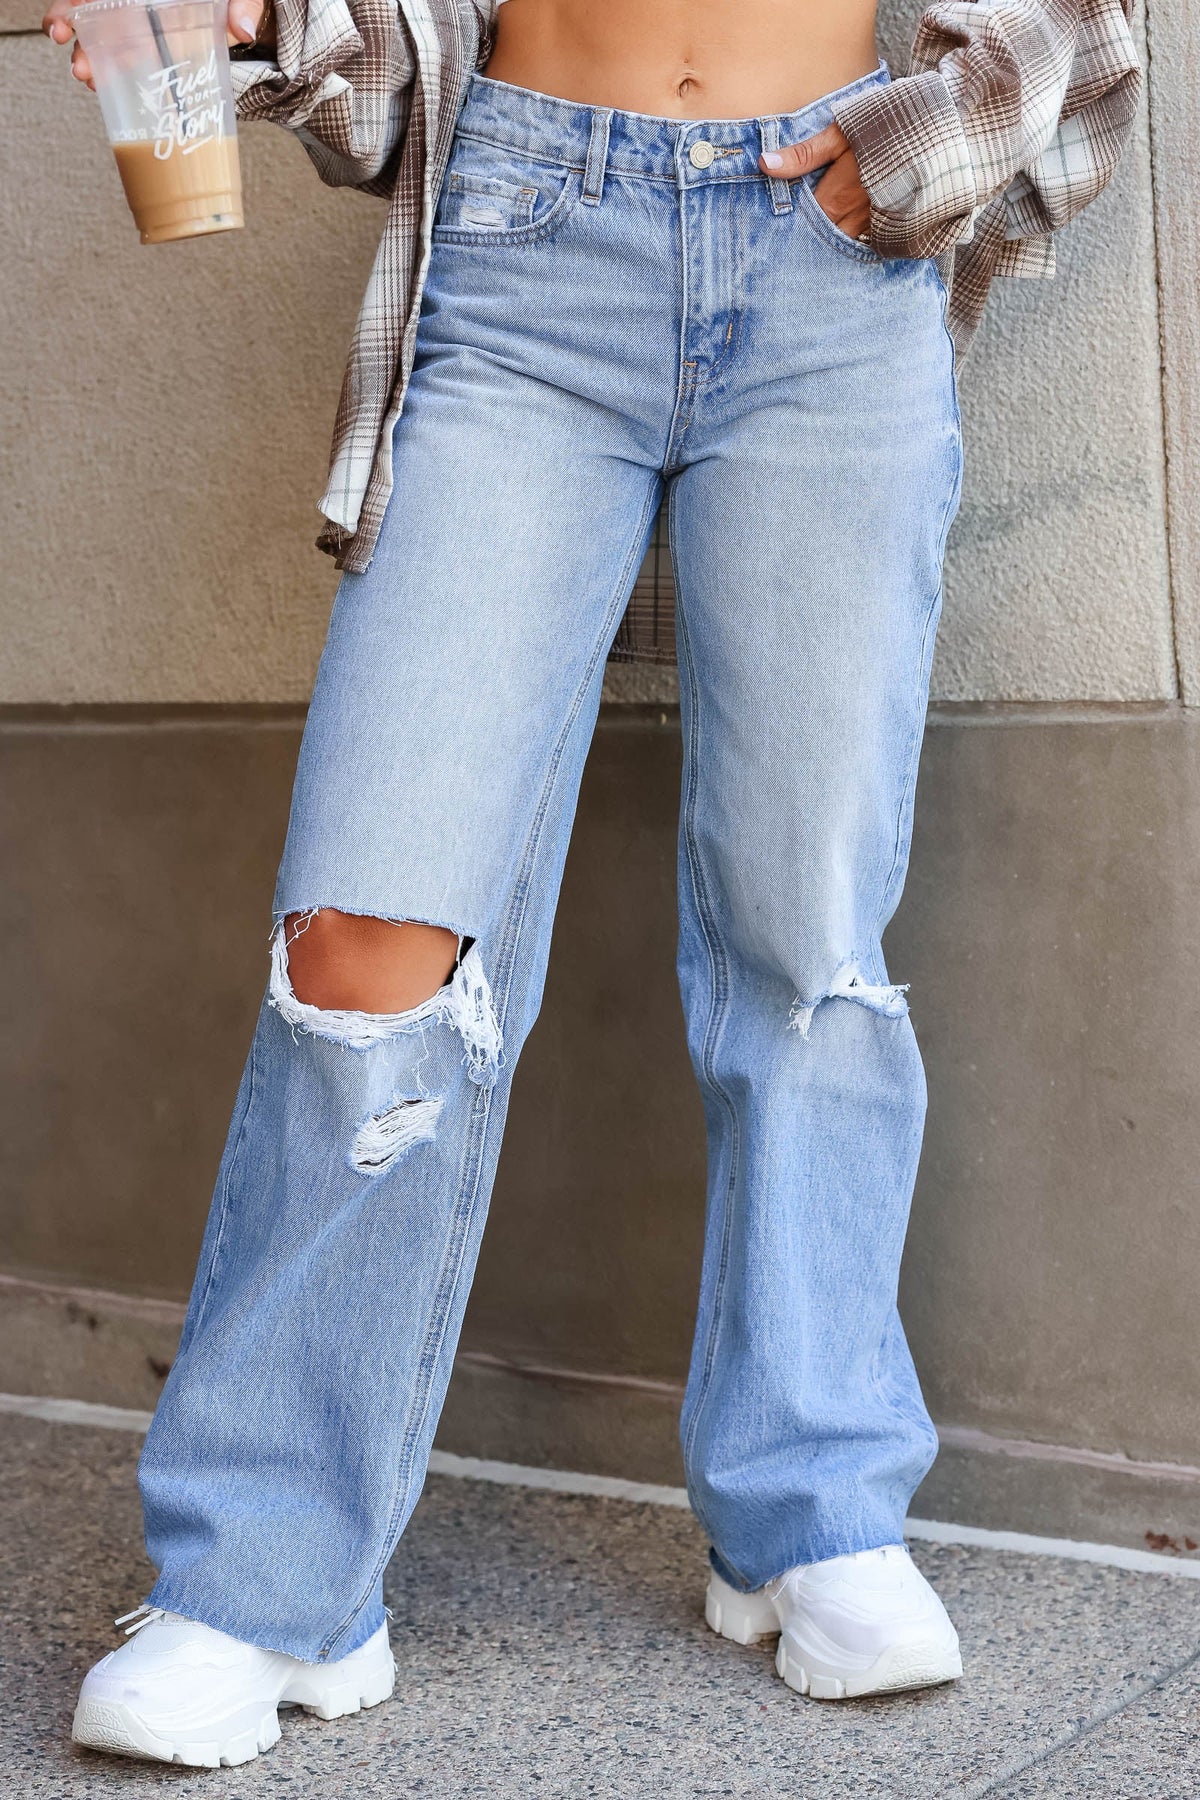 VERVET Hailey 90s Vintage Loose Fit Jeans - Medium - Closet Candy Boutique